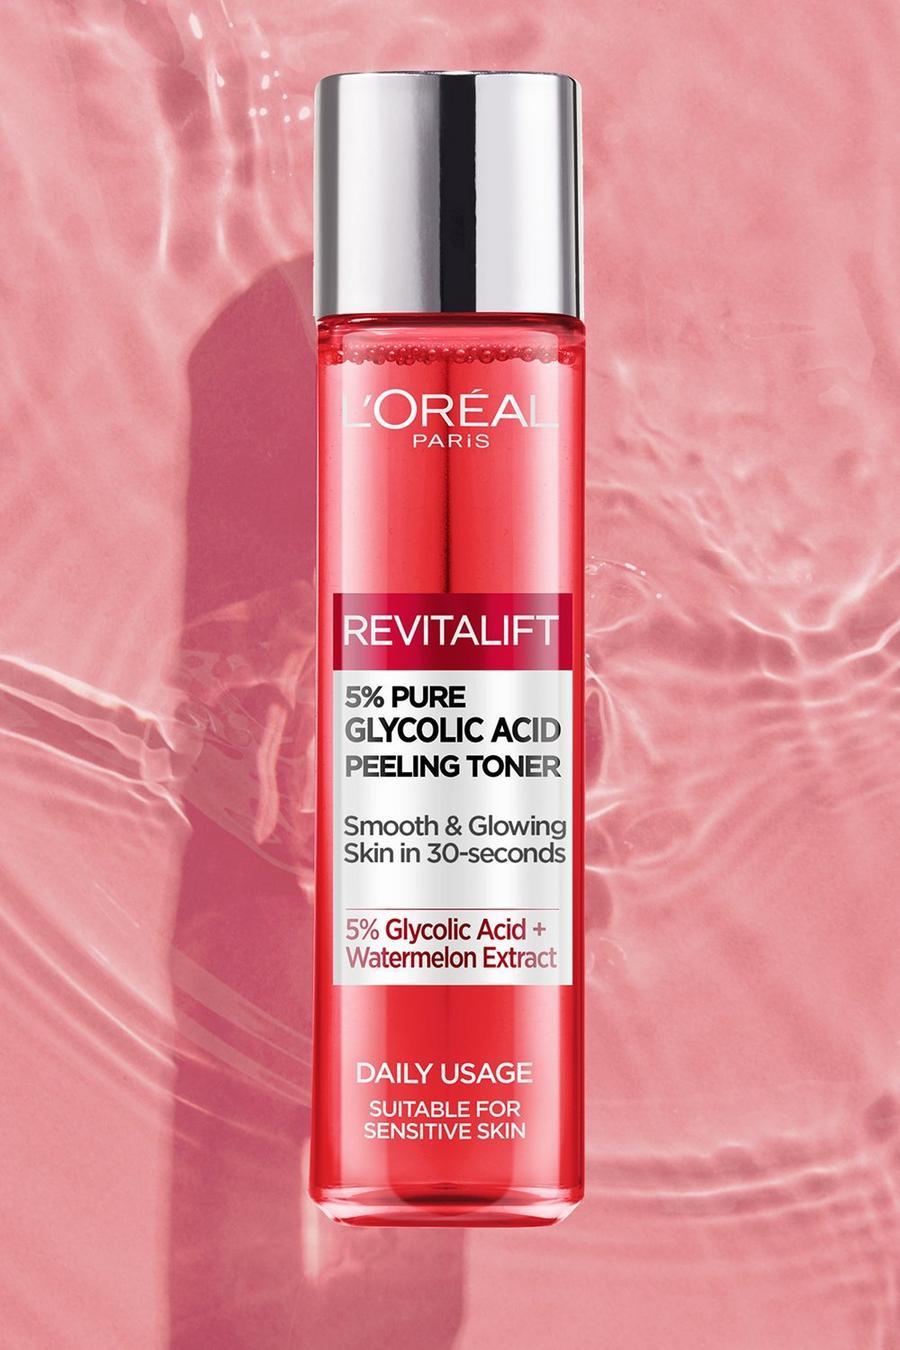 L'Oréal Paris - Peeling tonifiant avec 5% d'acide glycolique, Multi mehrfarbig